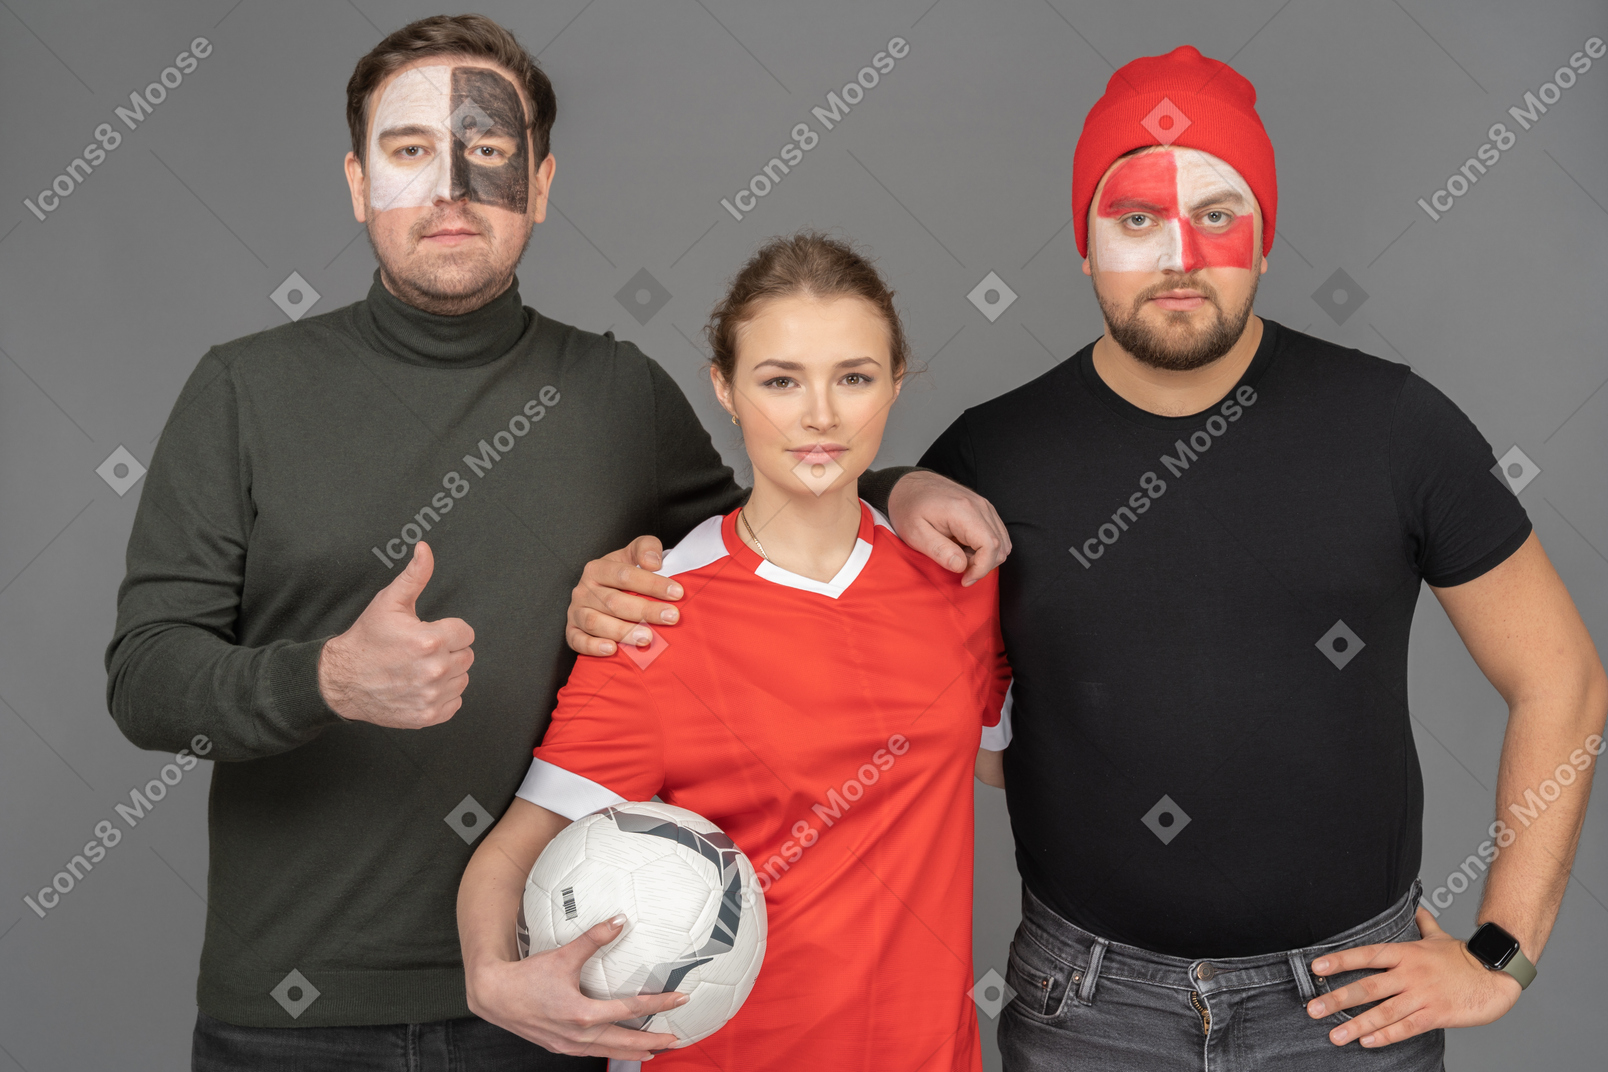 Un portrait de deux fans masculins de football avec une joueuse de football